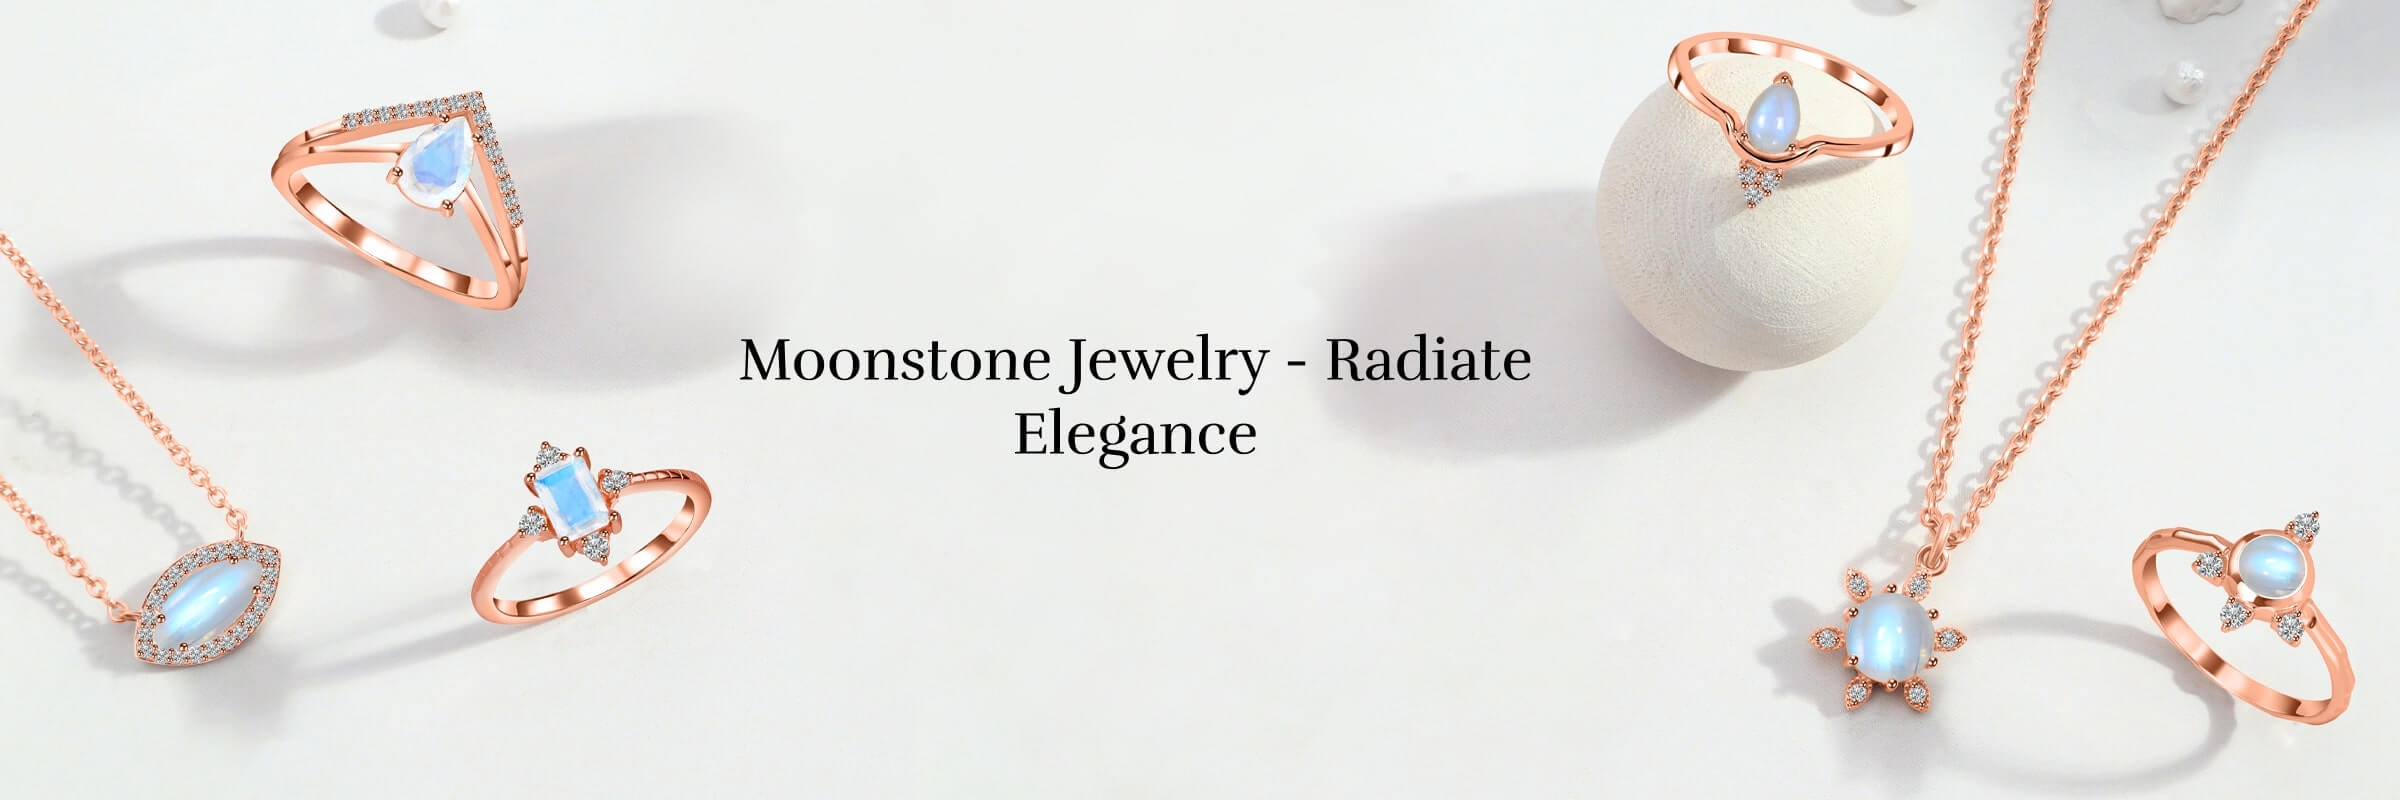 Moonstone jewelry